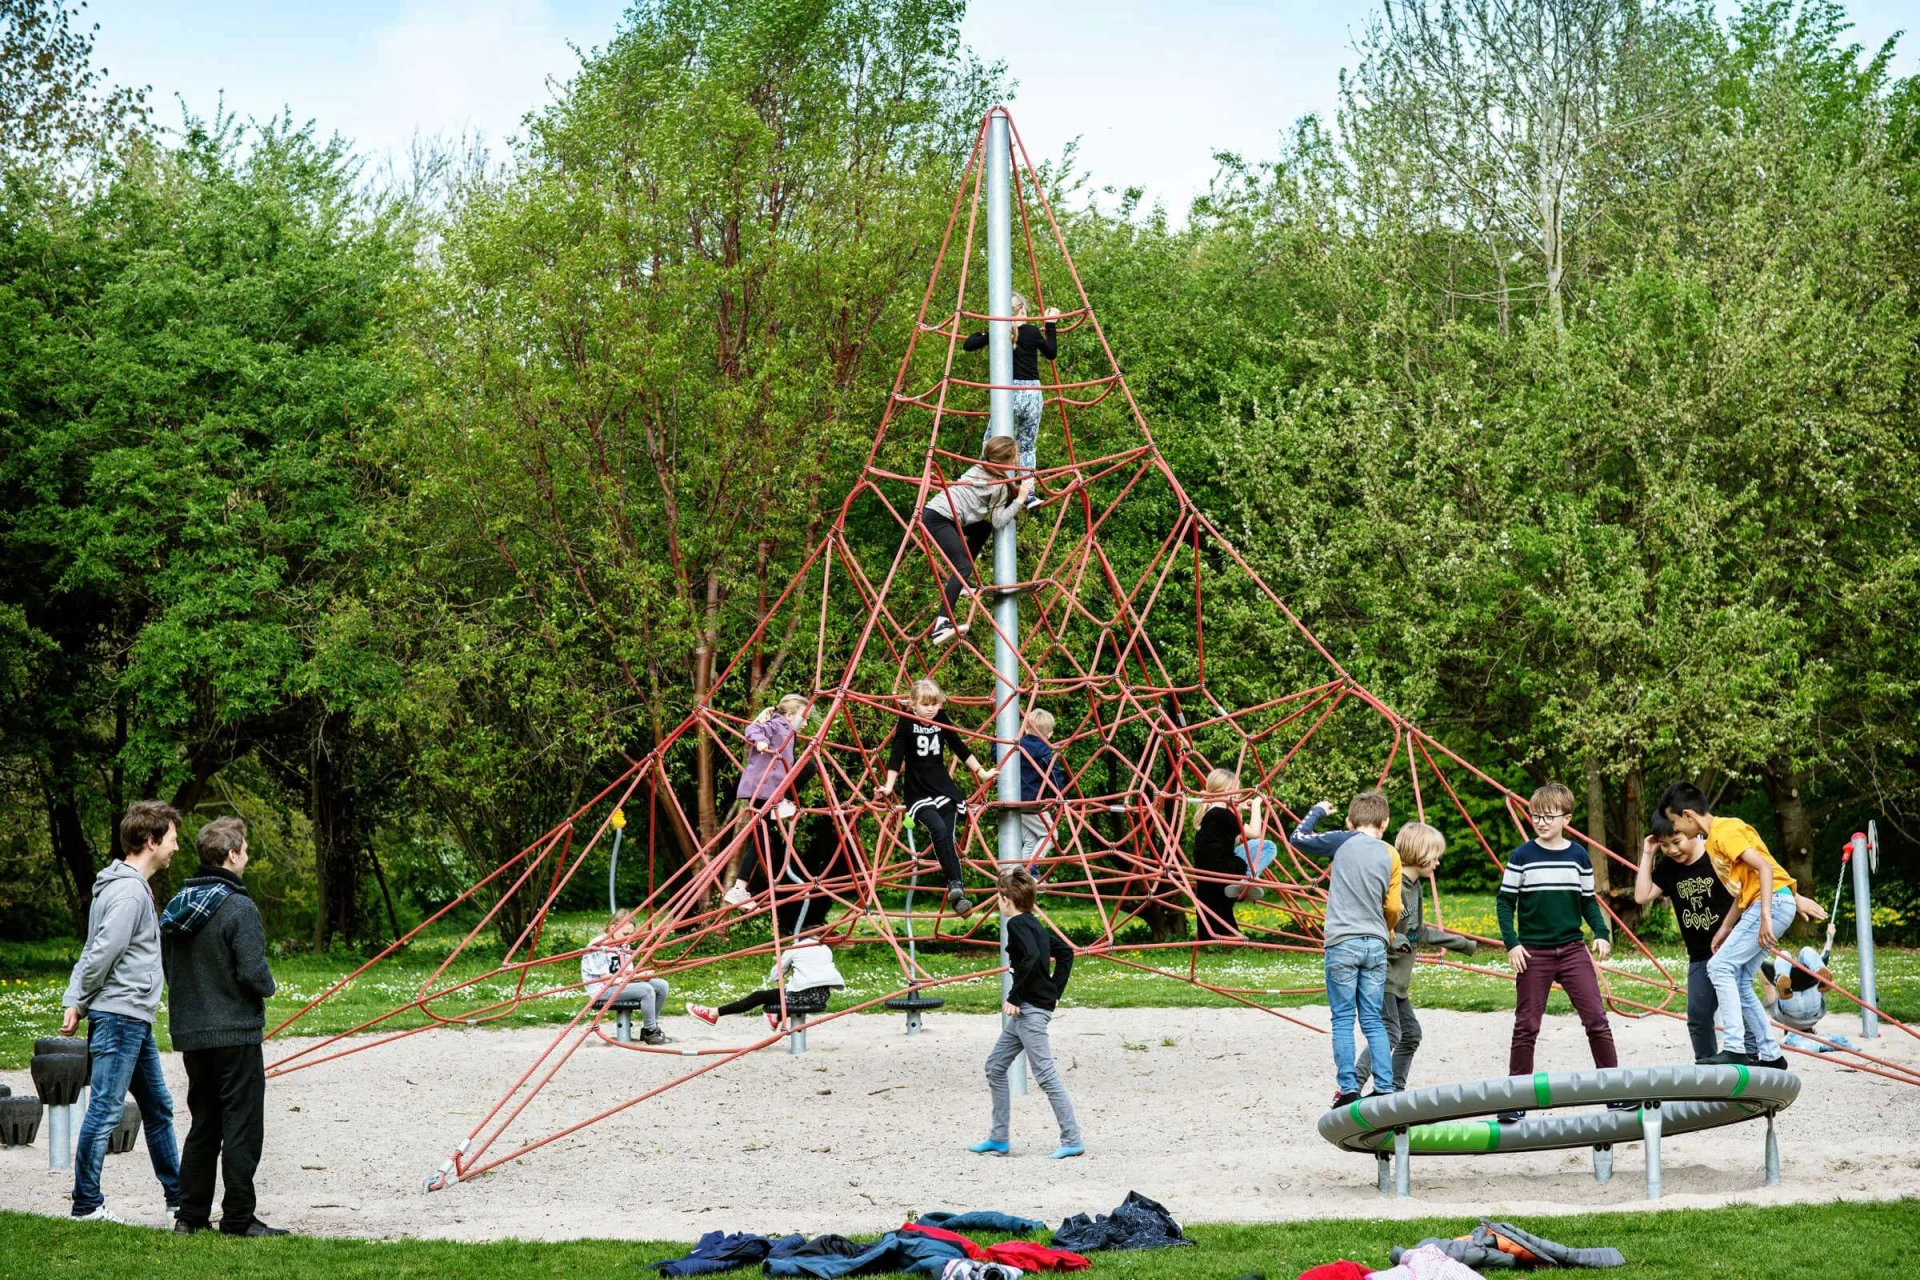 een groep mensen speelt op een piramidevormige klimstructuur op een speelplaats